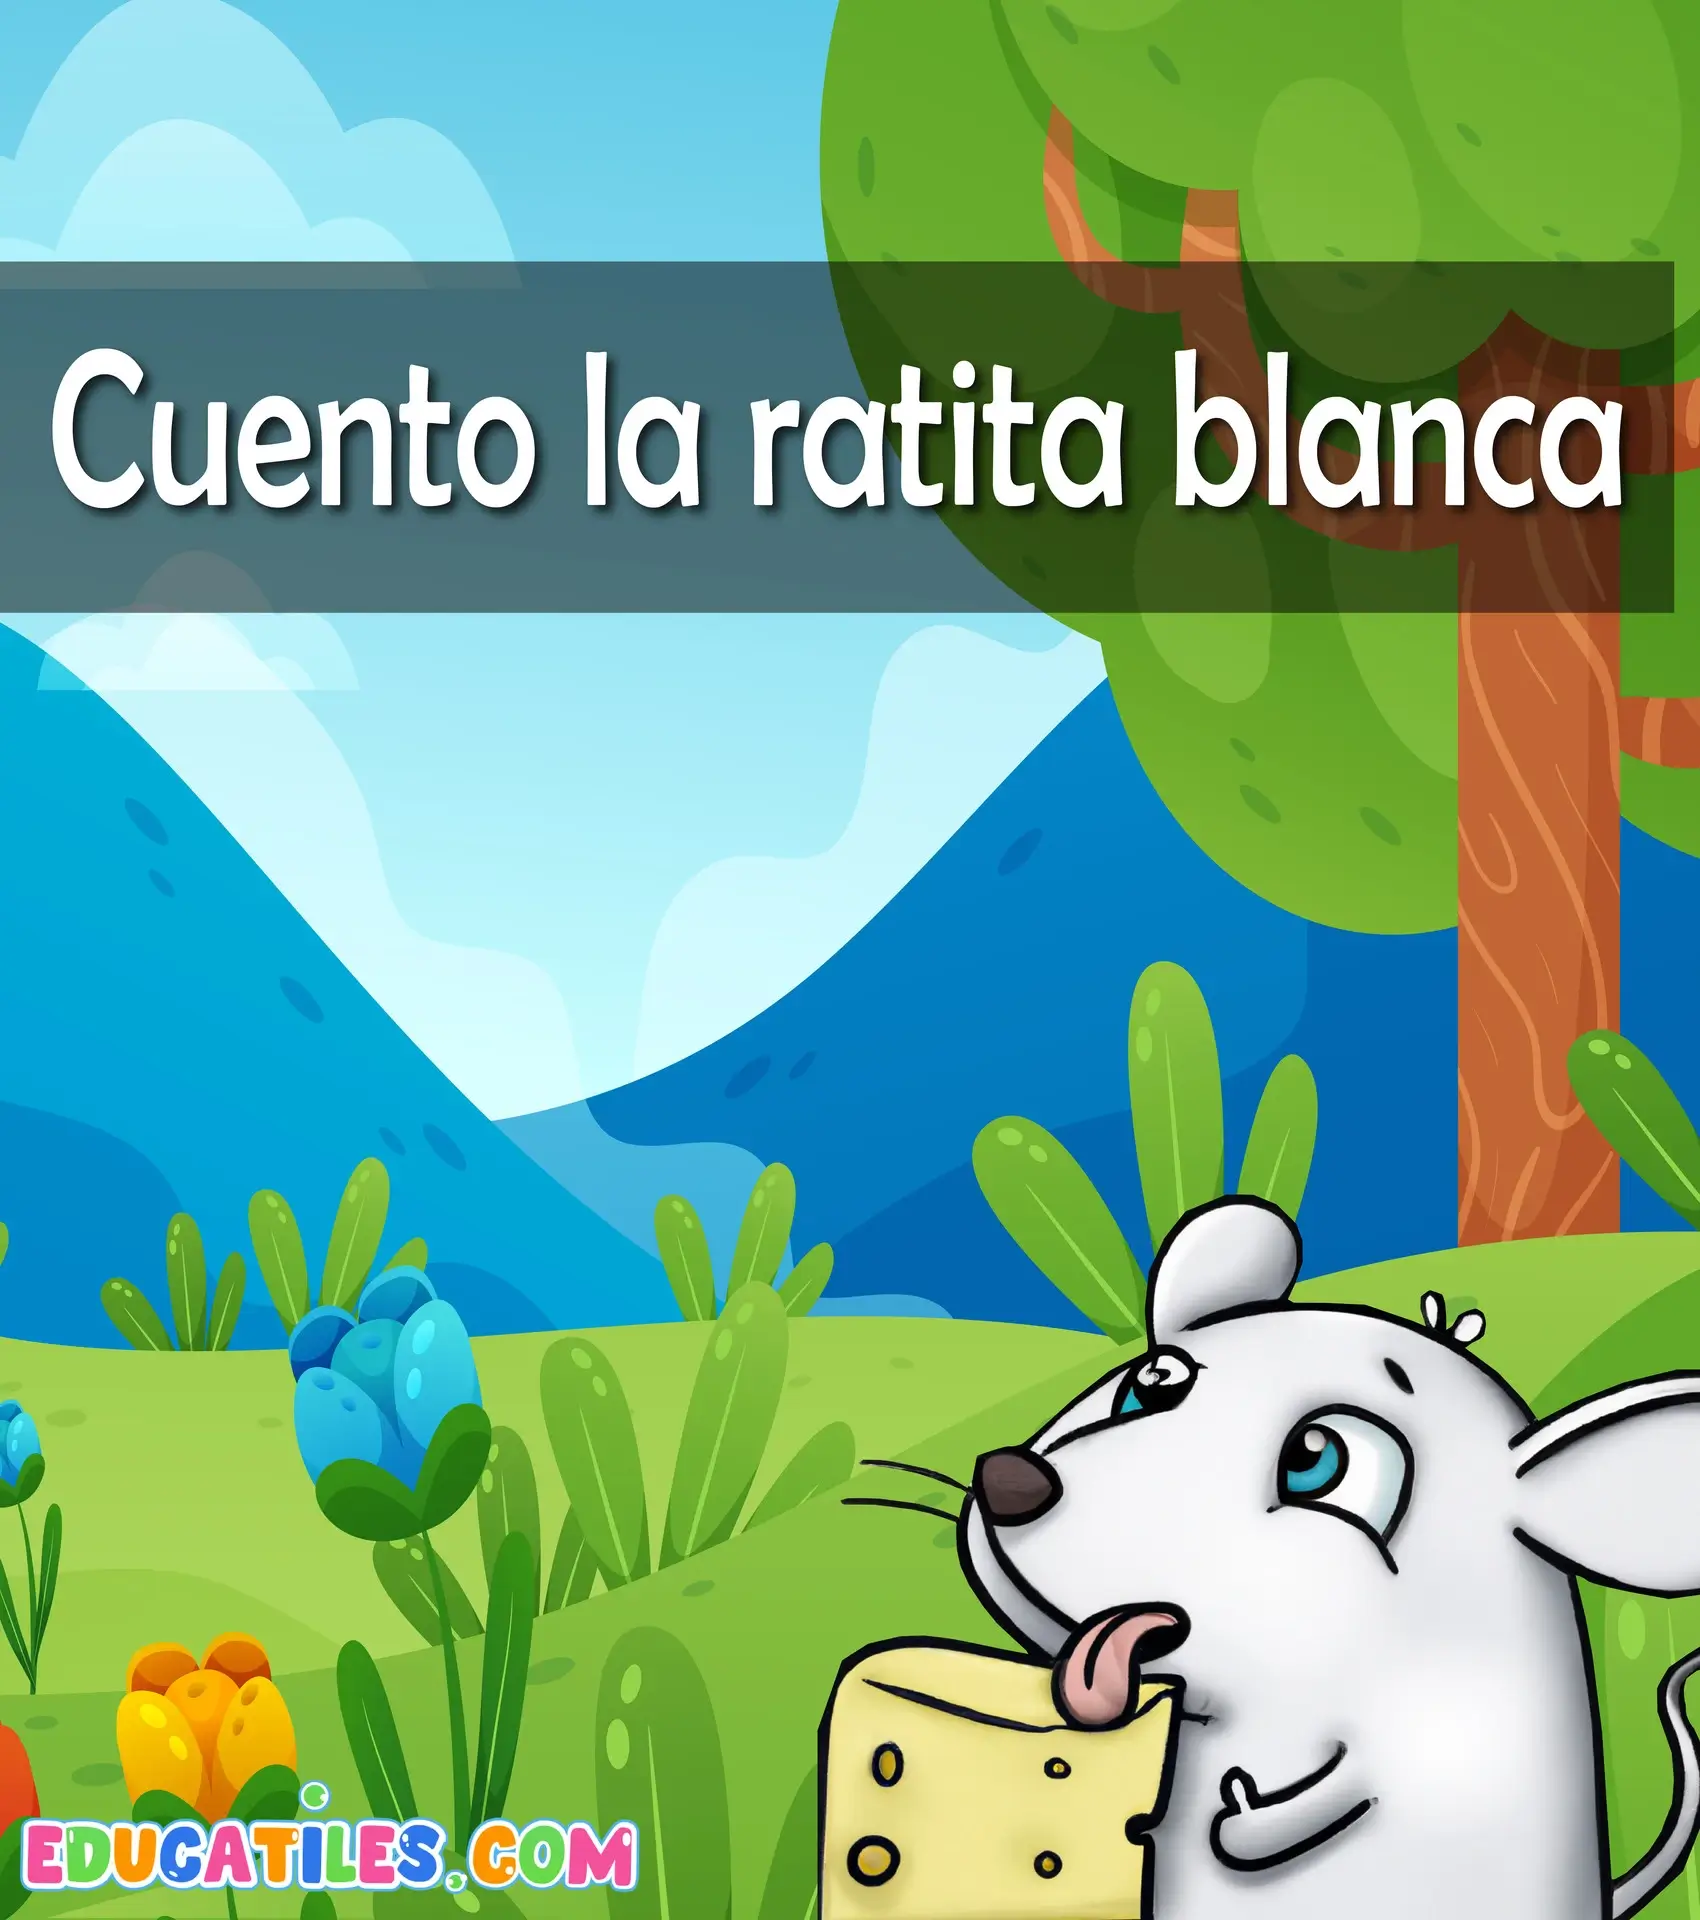 Cuento la ratita blanca Cuentos en español Materiales educativos Historias cortas para niños